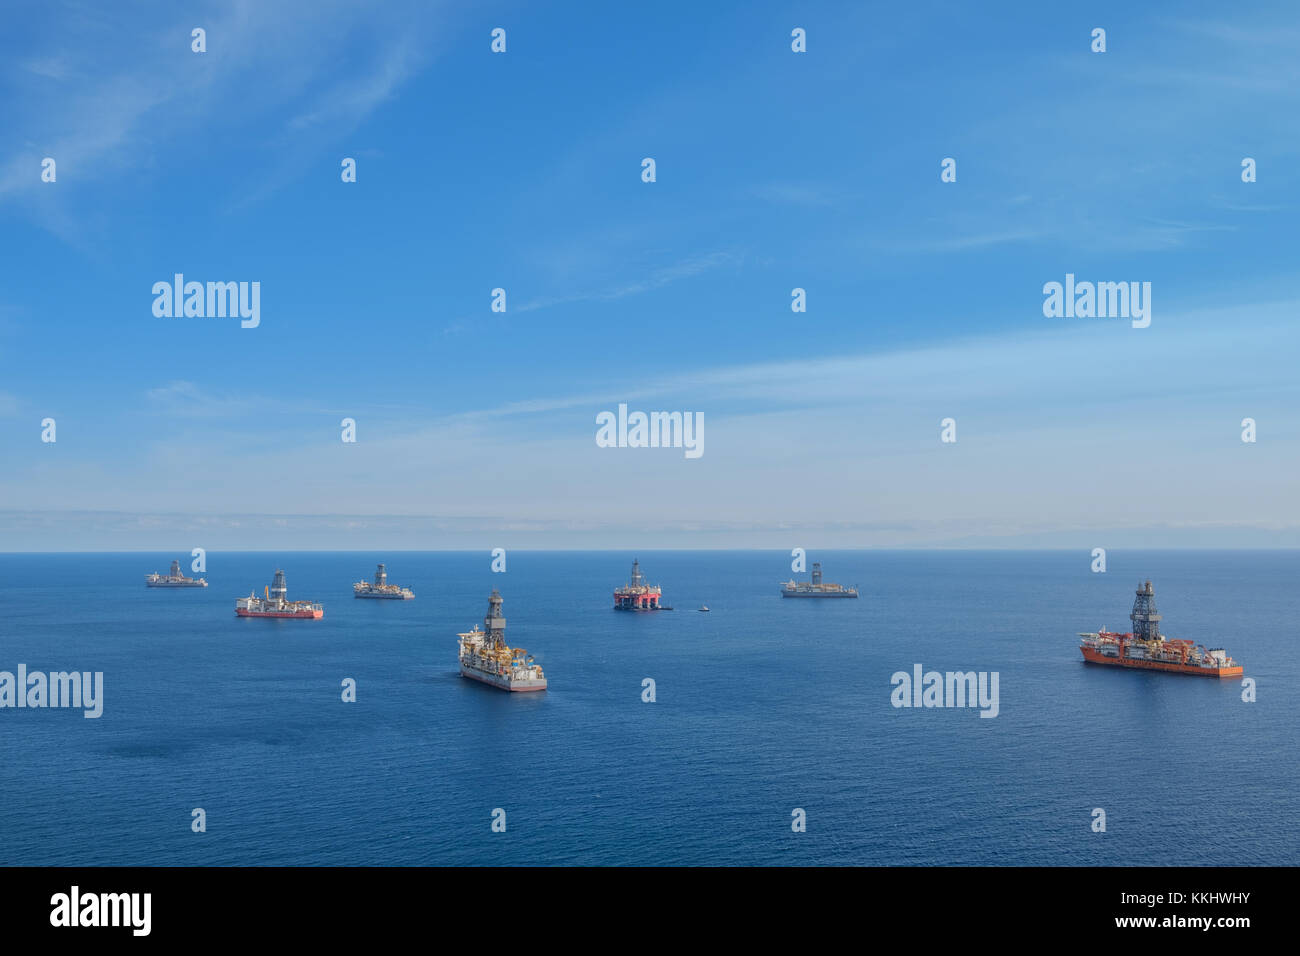 Schiff und Bohrplattform, offshore bohren Schiffe, ocean-Antenne - Stockfoto